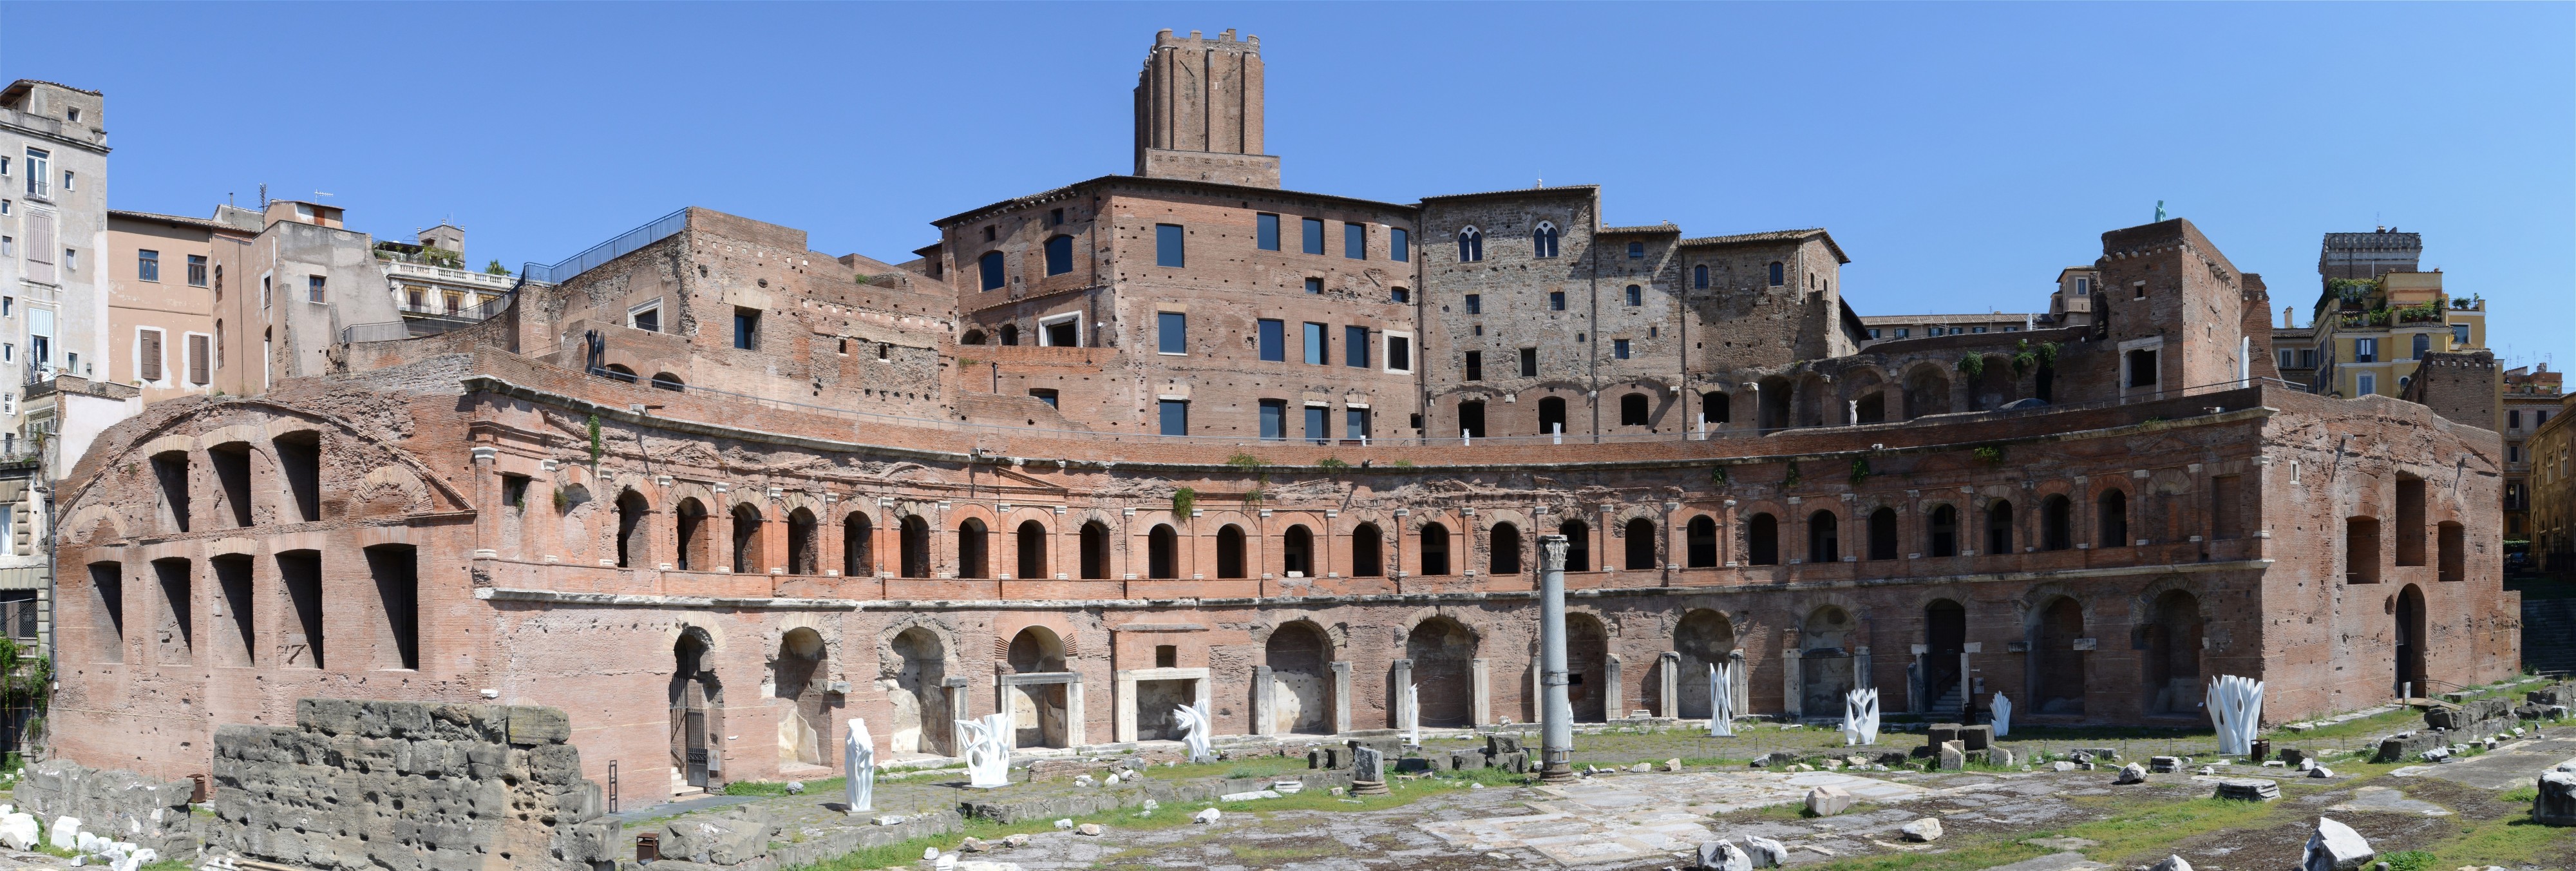 Forum of Trajan September 2015-1